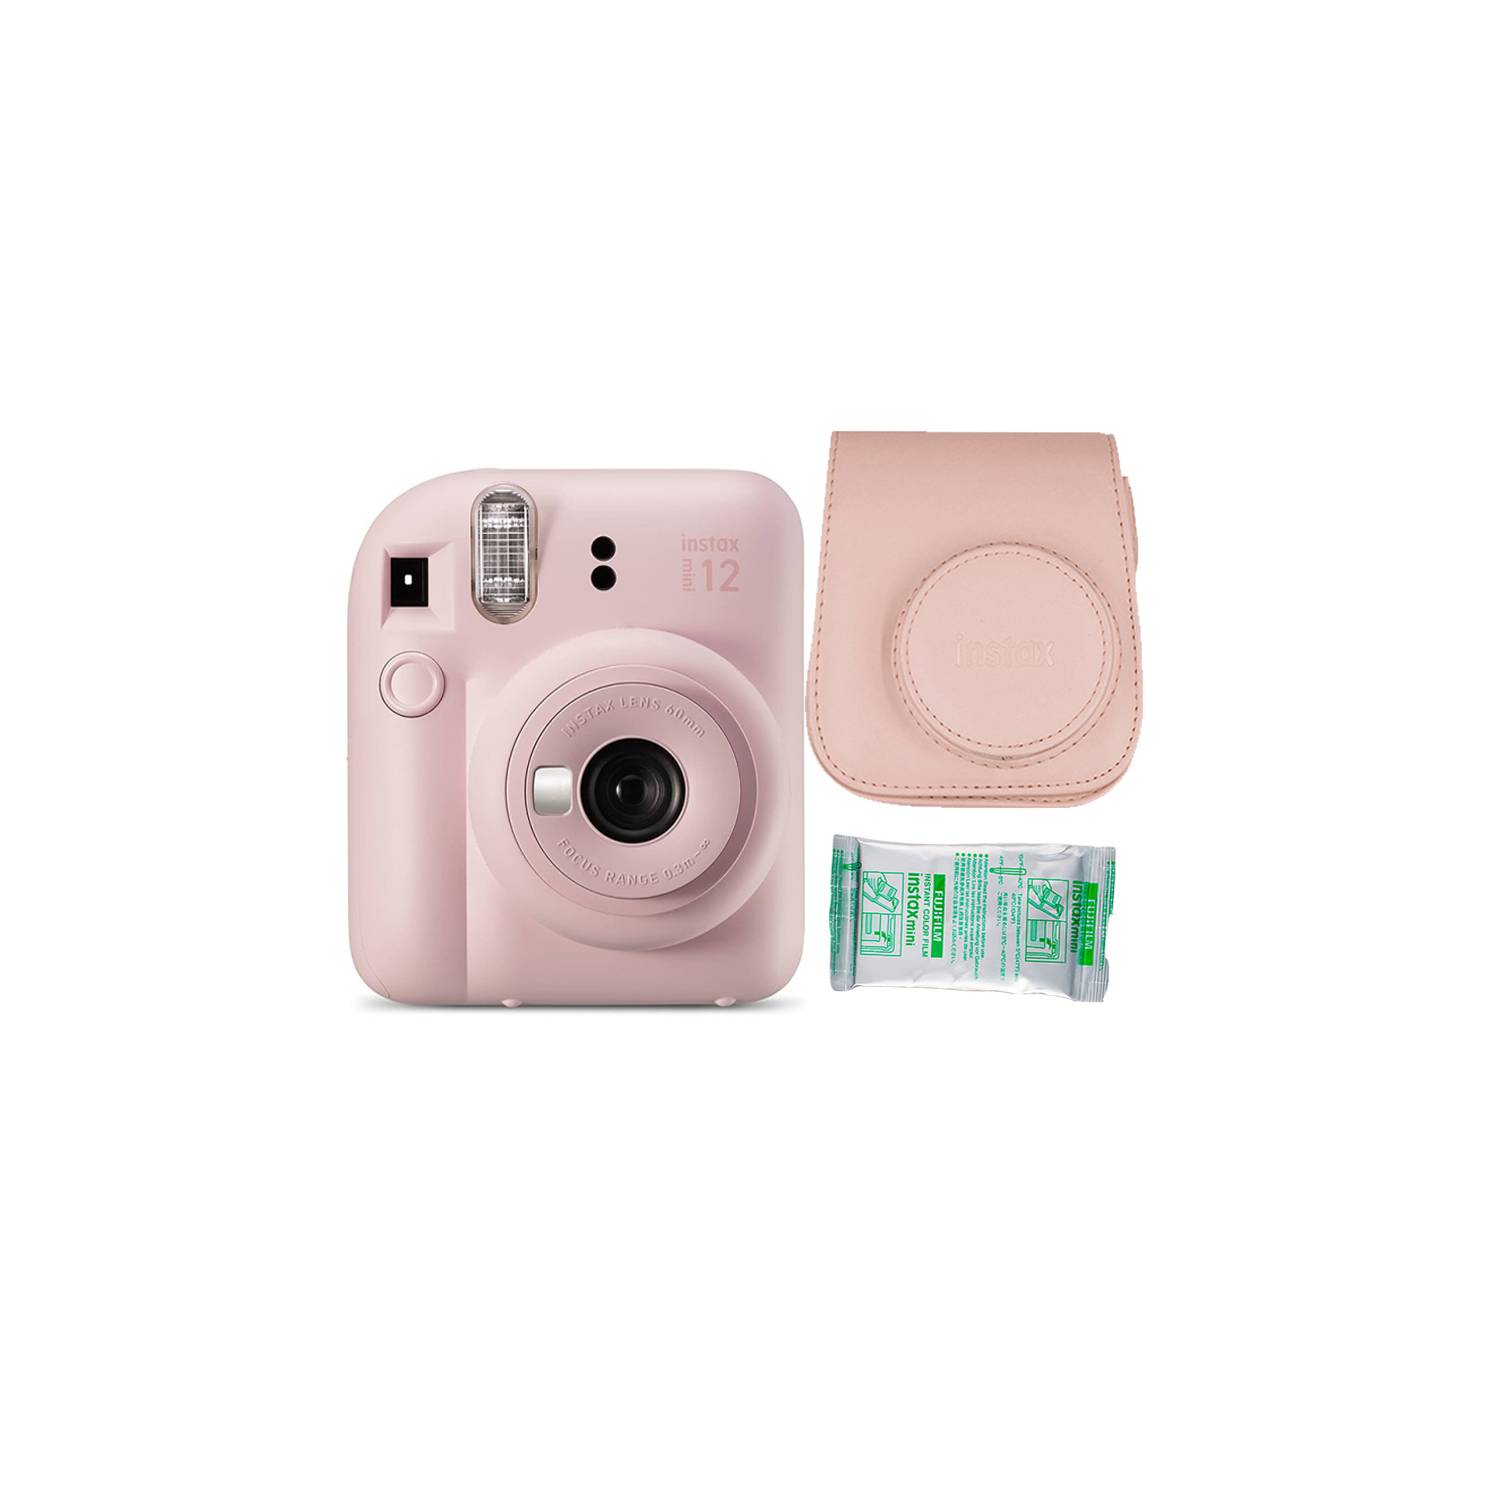  Fujifilm INSTAX Mini 12 - Cámara de película instantánea (rosa  flor) + paquete individual Fuji - 10 impresiones funda protectora rosa  álbum de fotos calcomanías de viaje : Electrónica